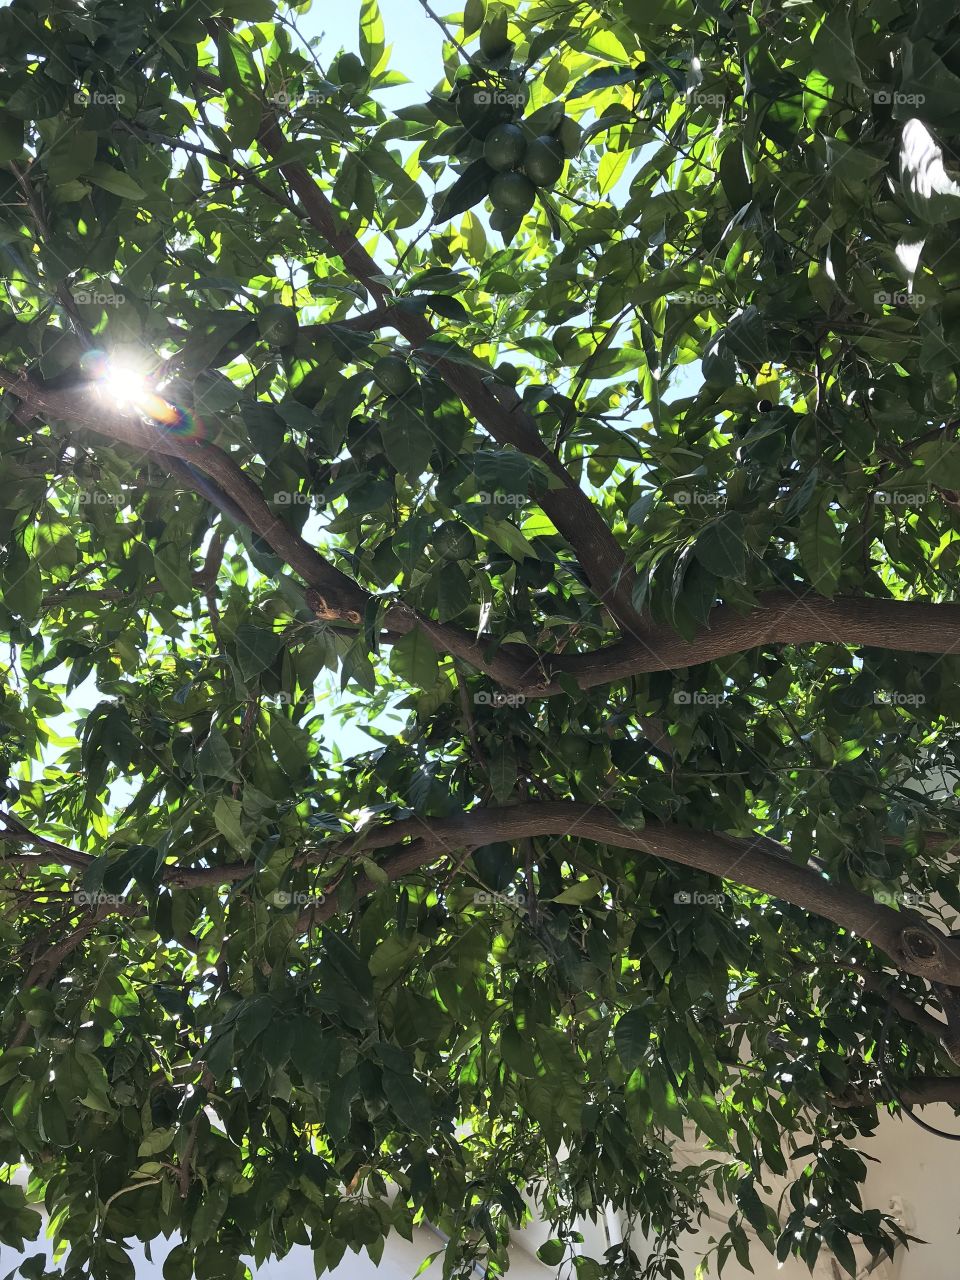 Under the tangerine tree